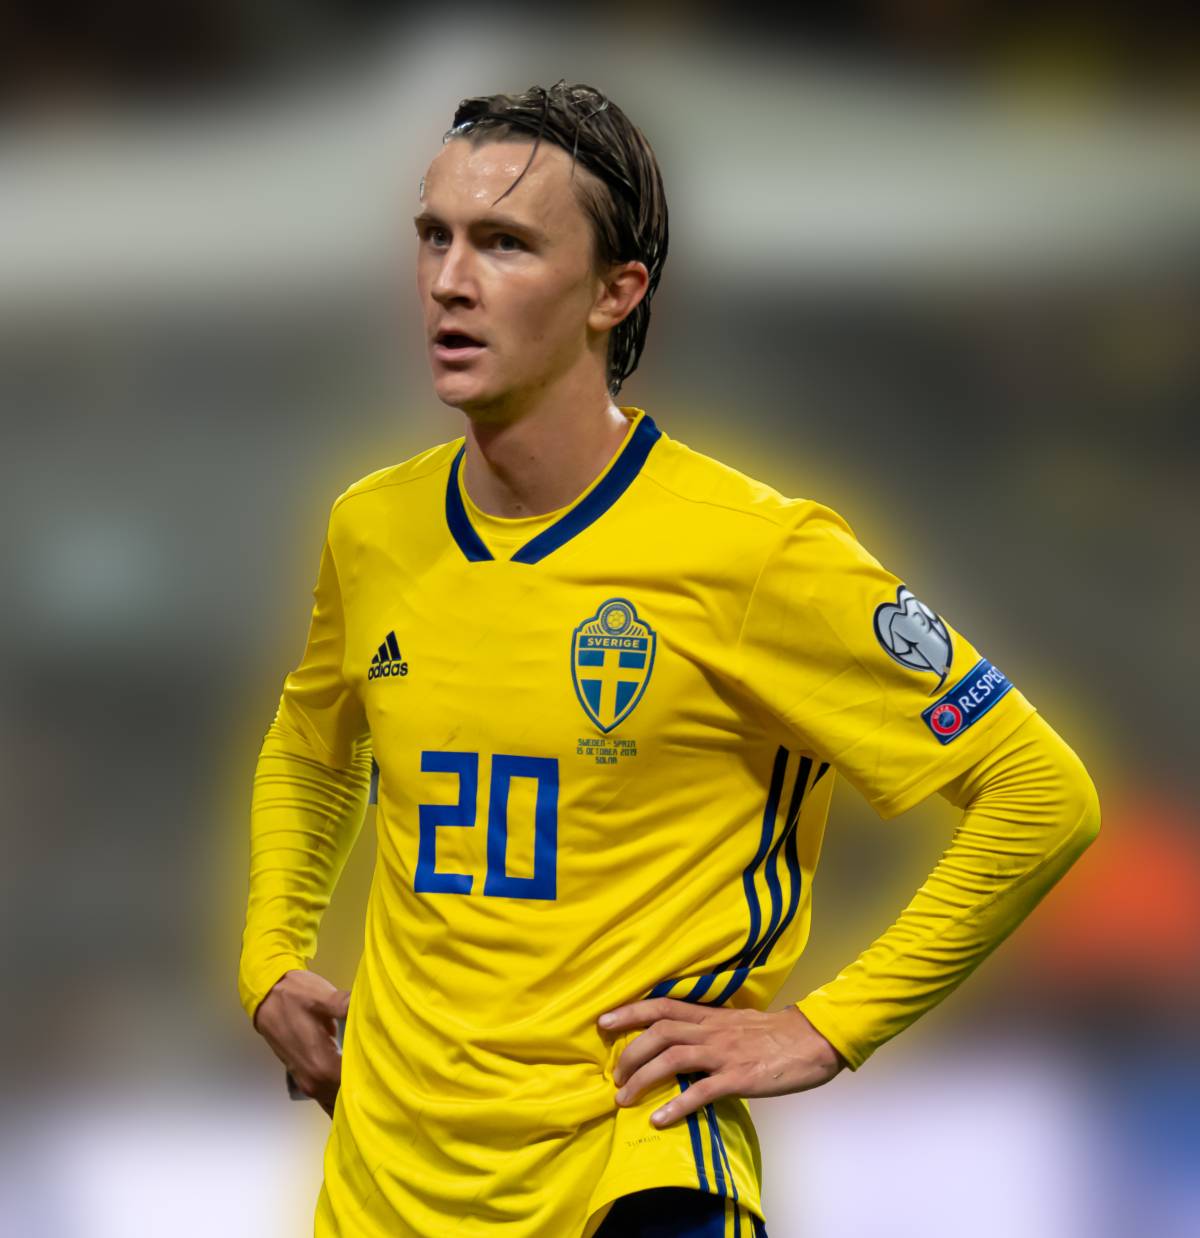 Il malore poi la il ricovero in gravi condizioni: come sta il calciatore della Svezia Olsson